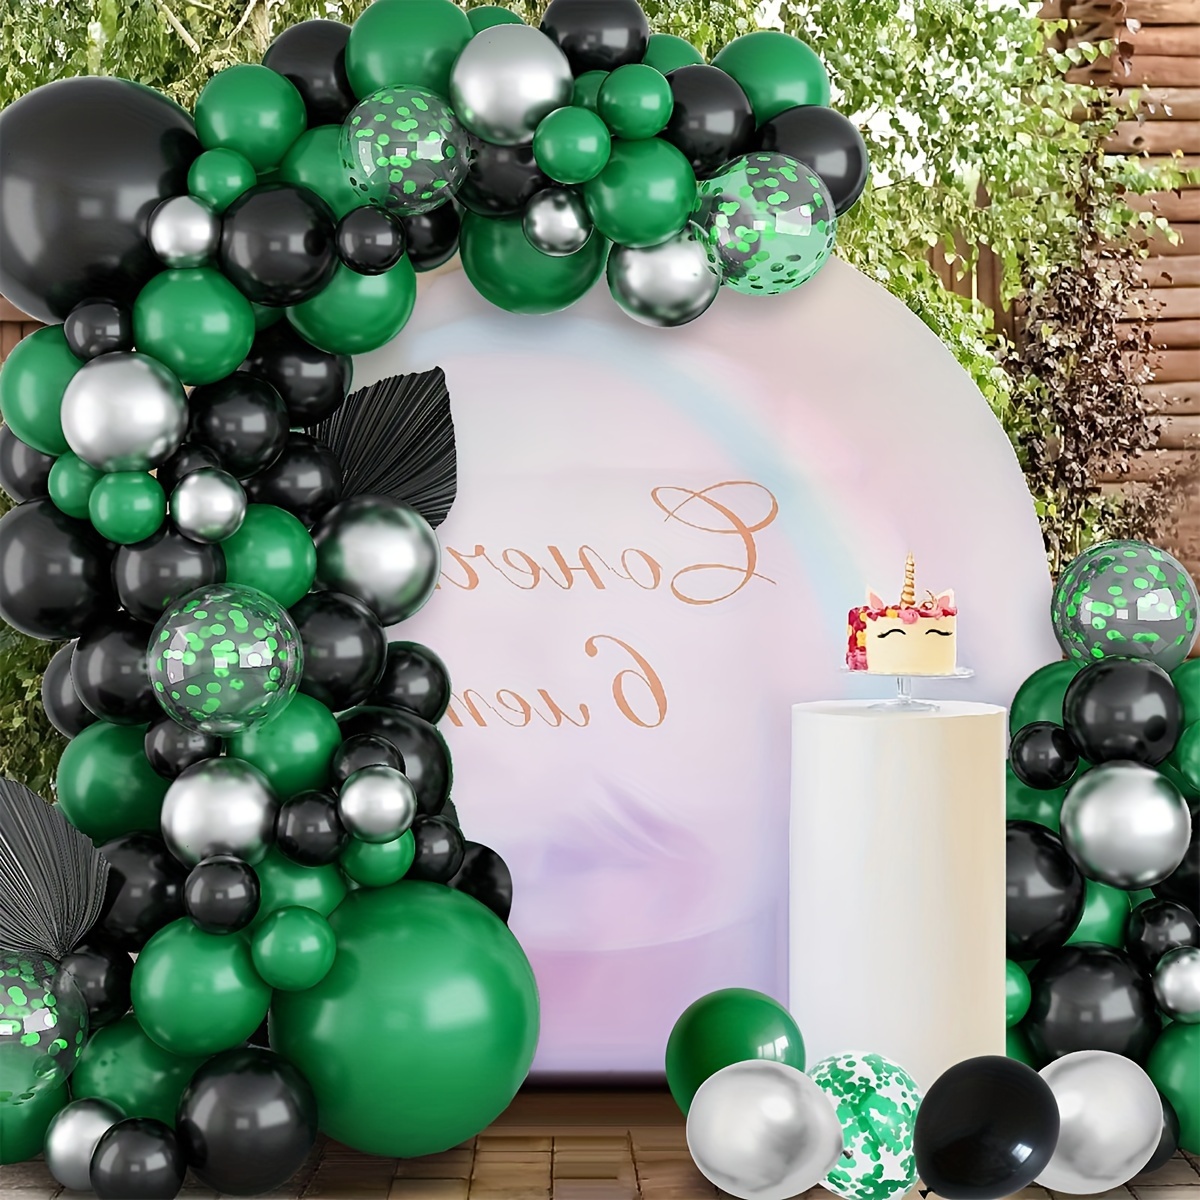 Kit de decoración para fiesta de ducha bohemia de 140 piezas: globos retro  verde salvia, blanco y dorado metálico, confeti verde macarrón y más.